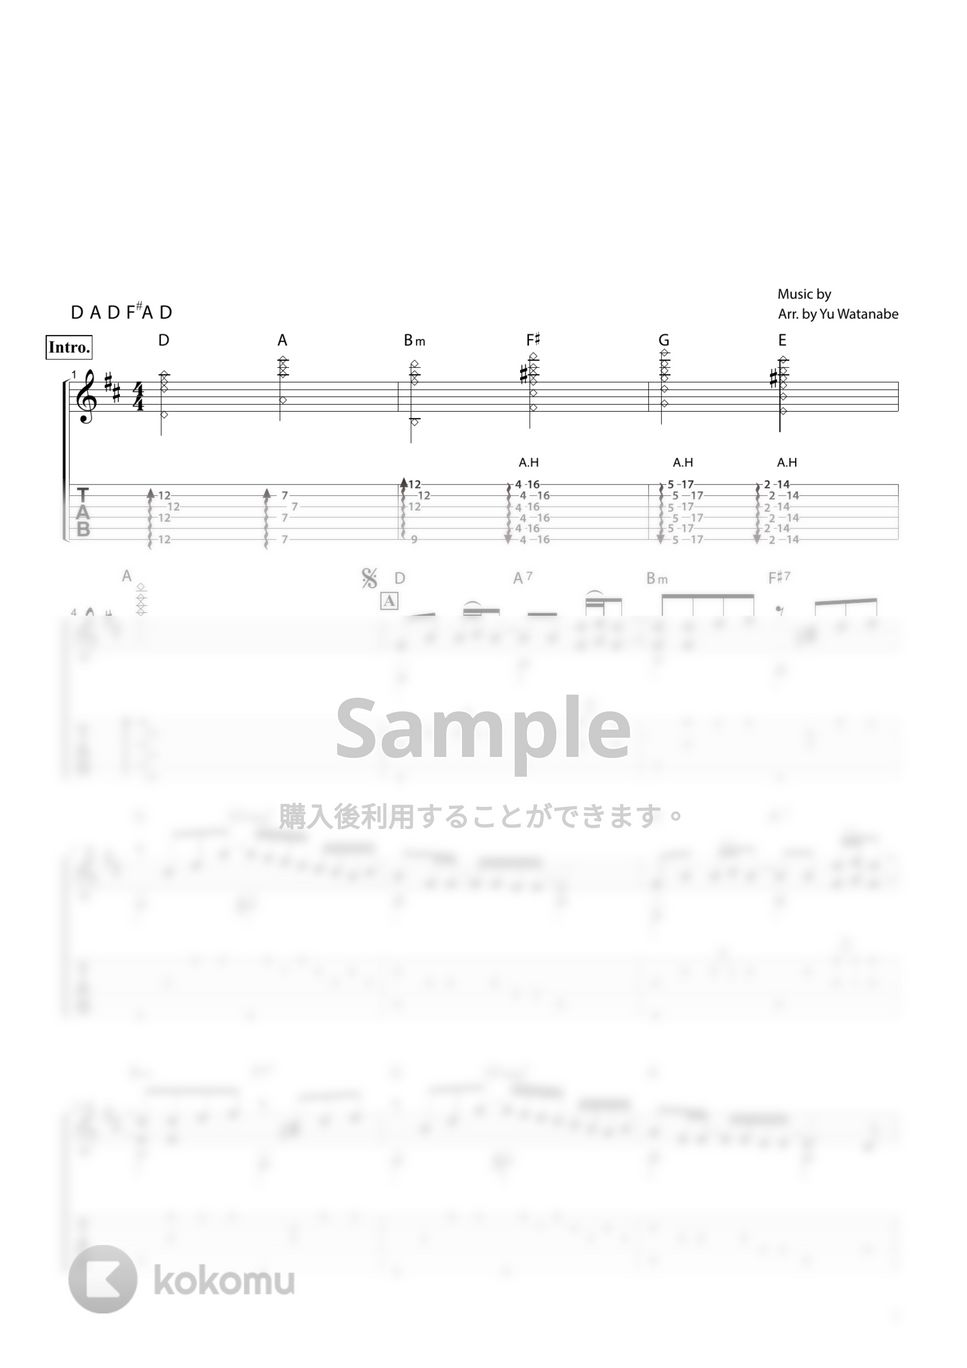 米津玄師 - サンタマリア by わたなべゆう